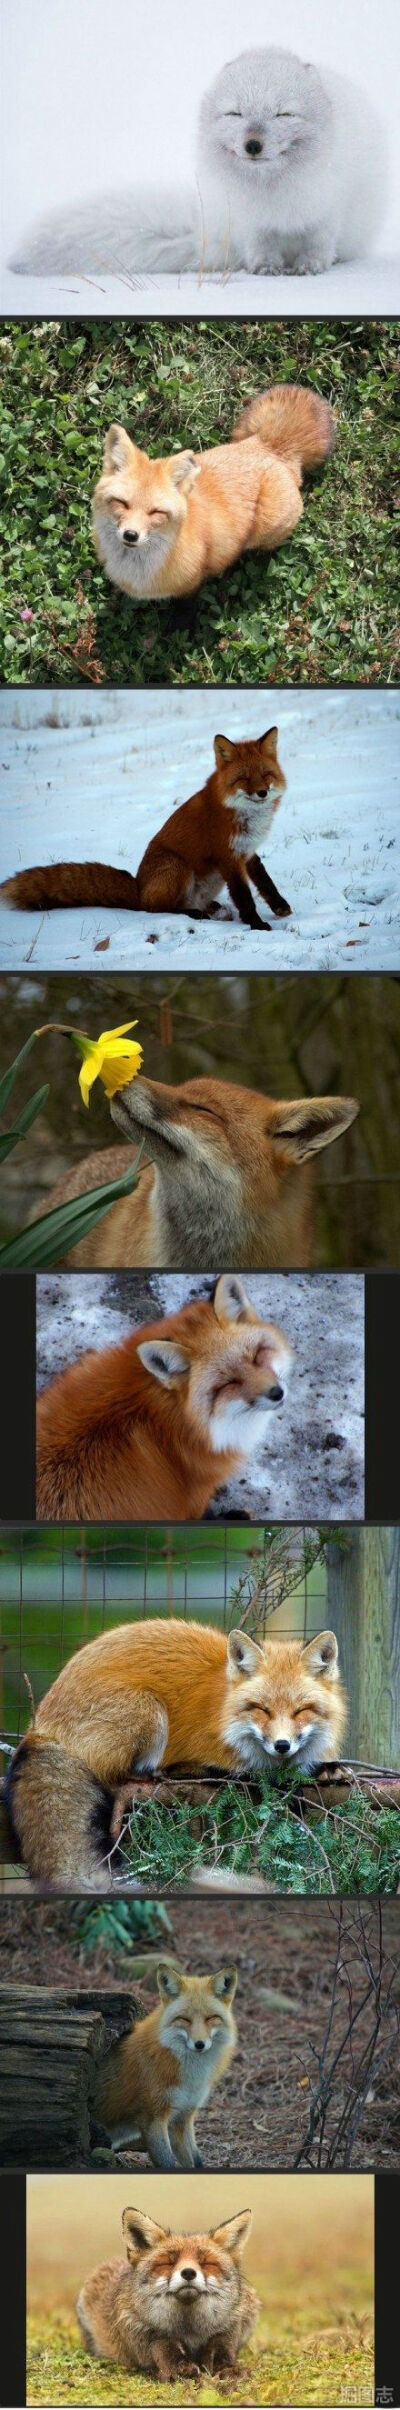 狐狸天生爱笑